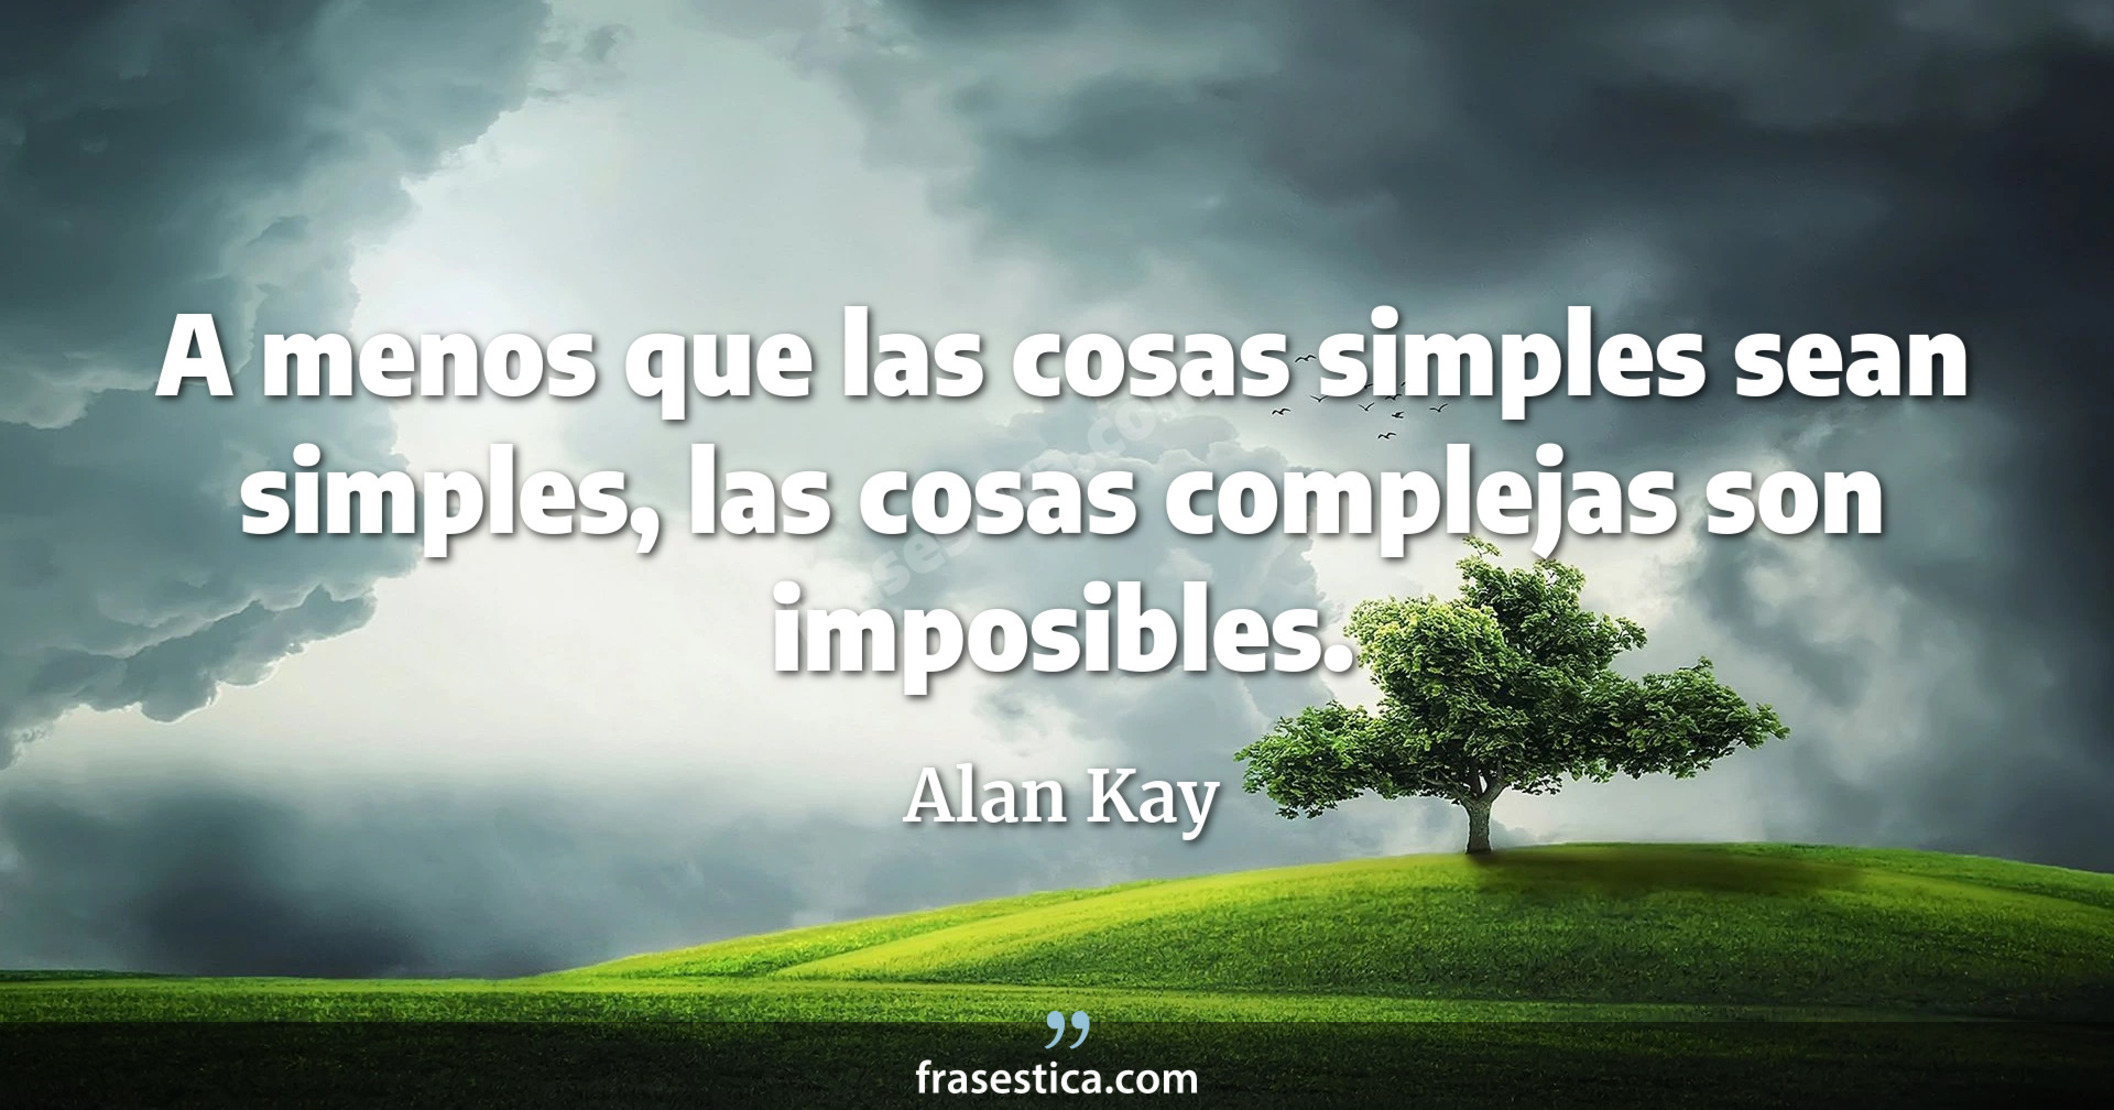 A menos que las cosas simples sean simples, las cosas complejas son imposibles. - Alan Kay